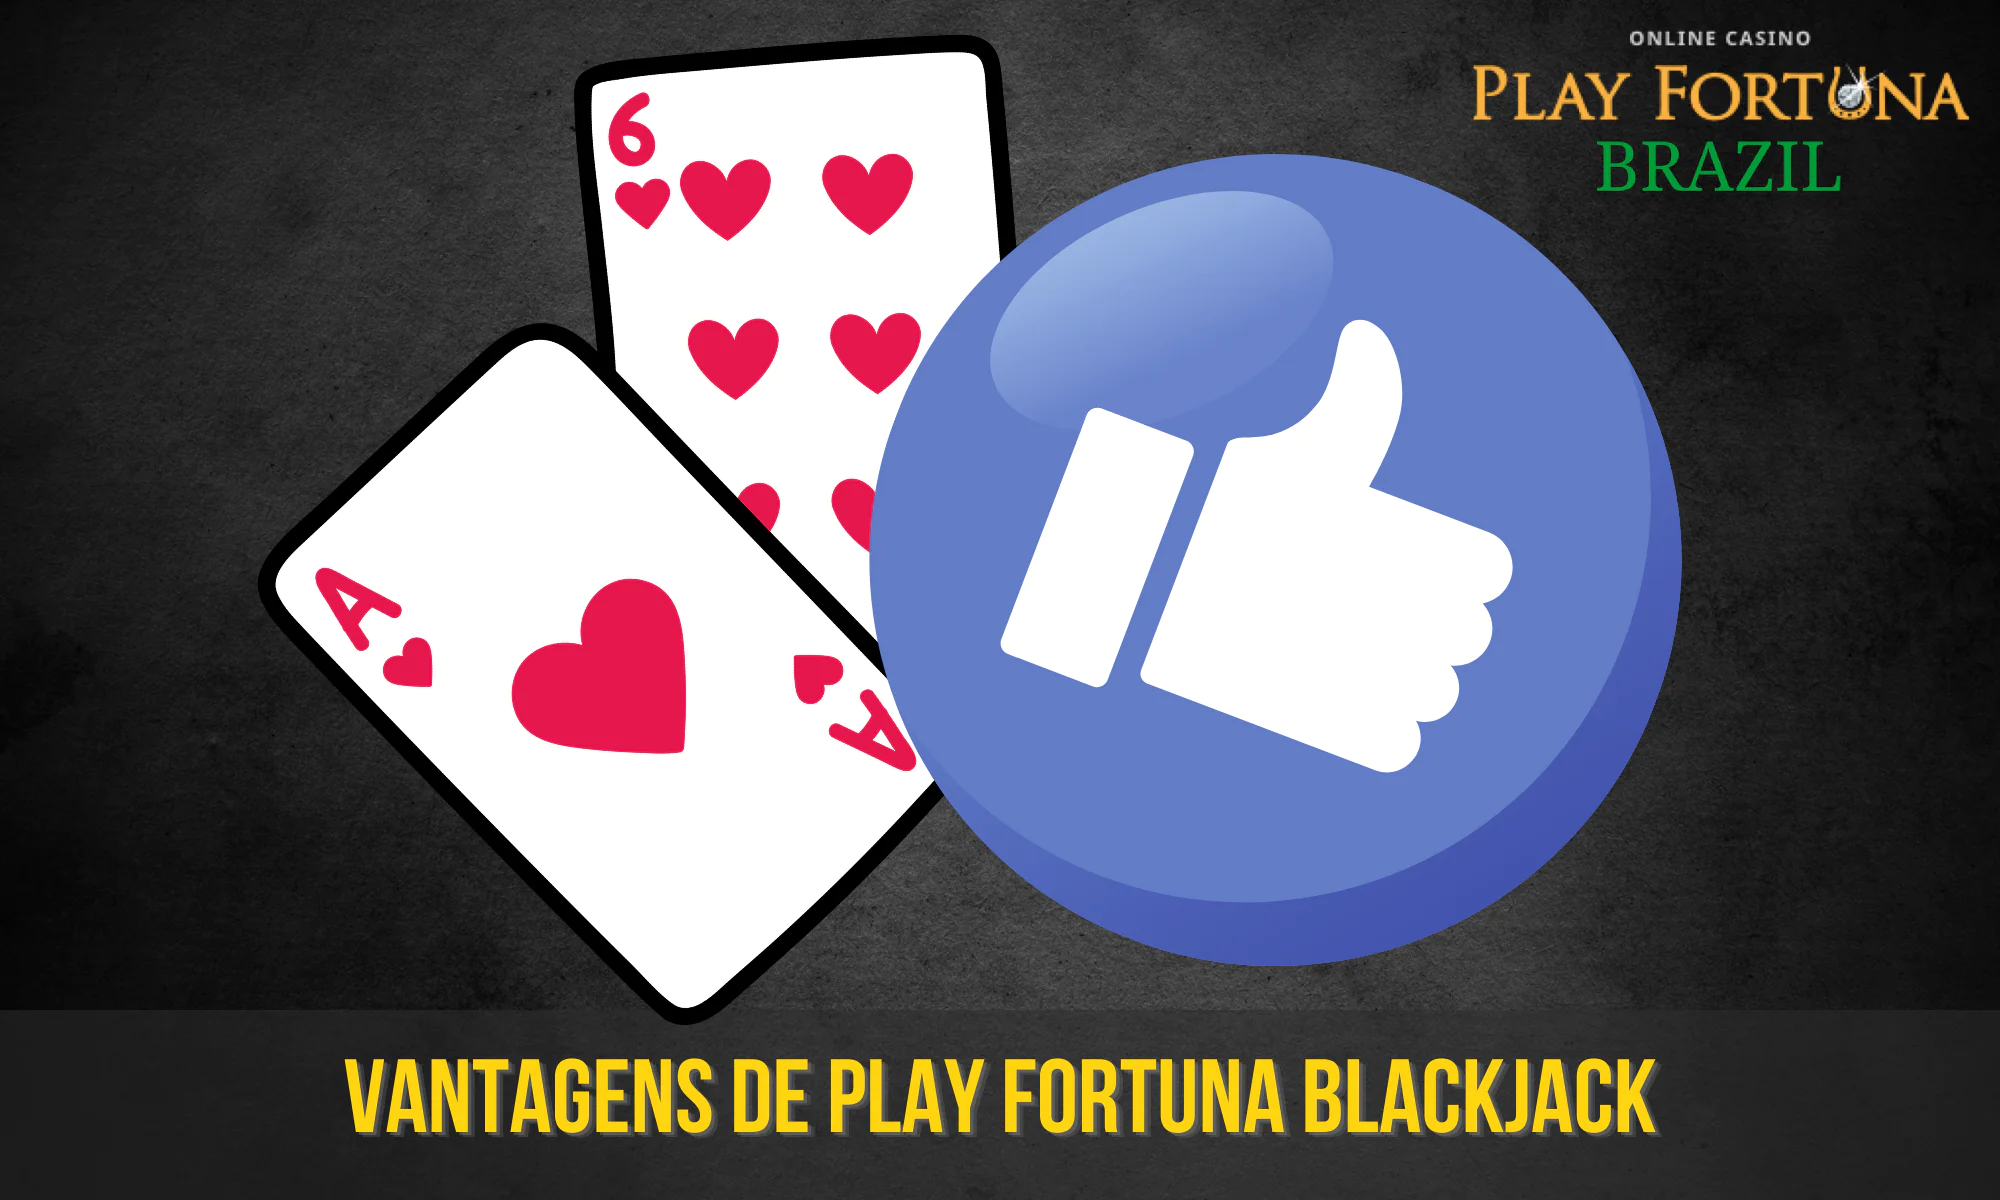 O Blackjack no Play Fortuna tem uma série de vantagens em relação a outros sites